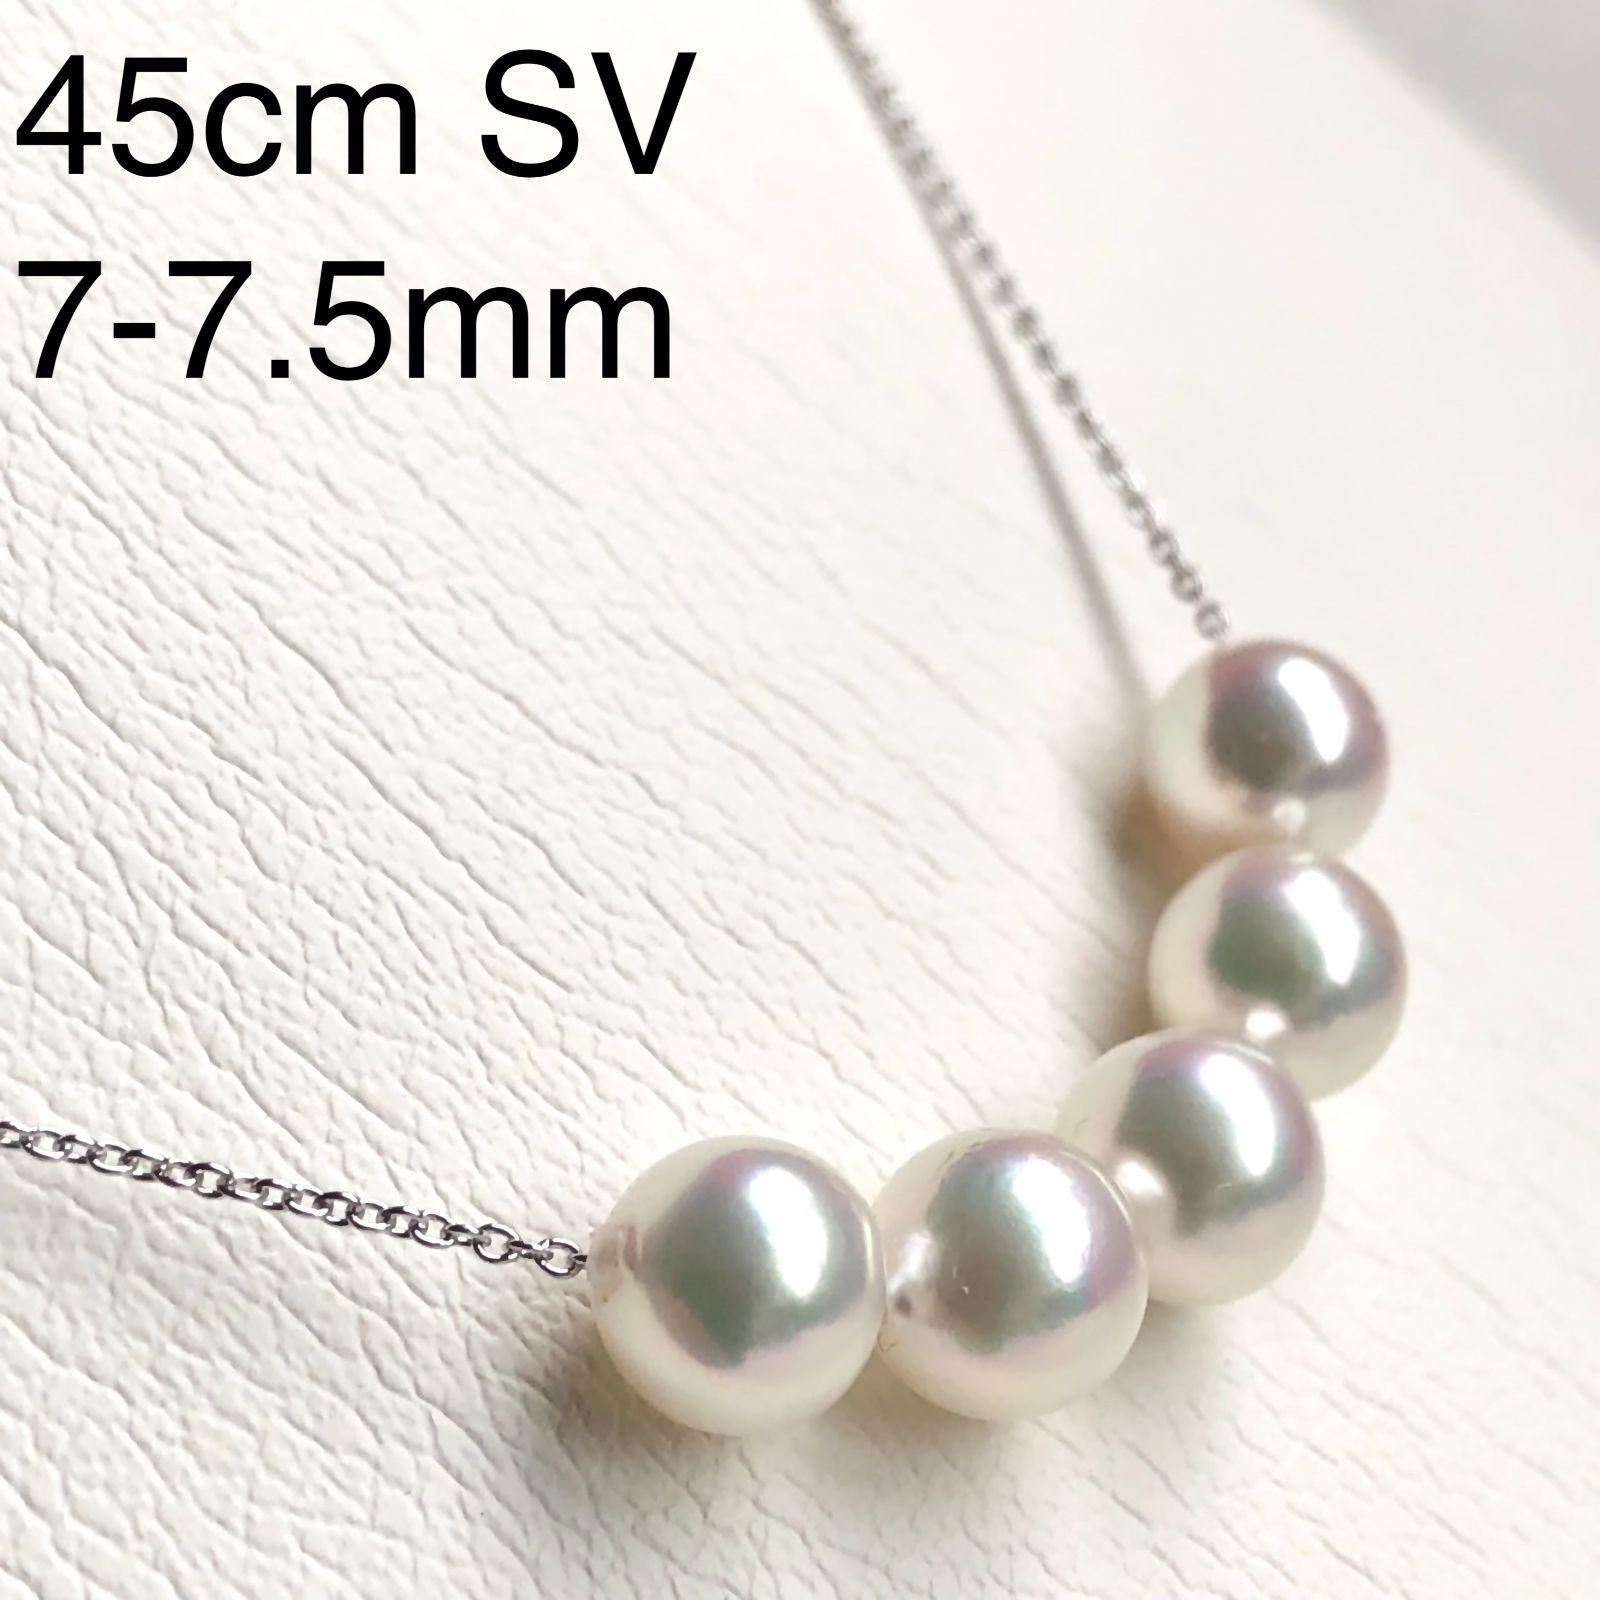 アコヤ真珠 7.0-7.5mm スルーネックレス SV 45cmスライド - メルカリ